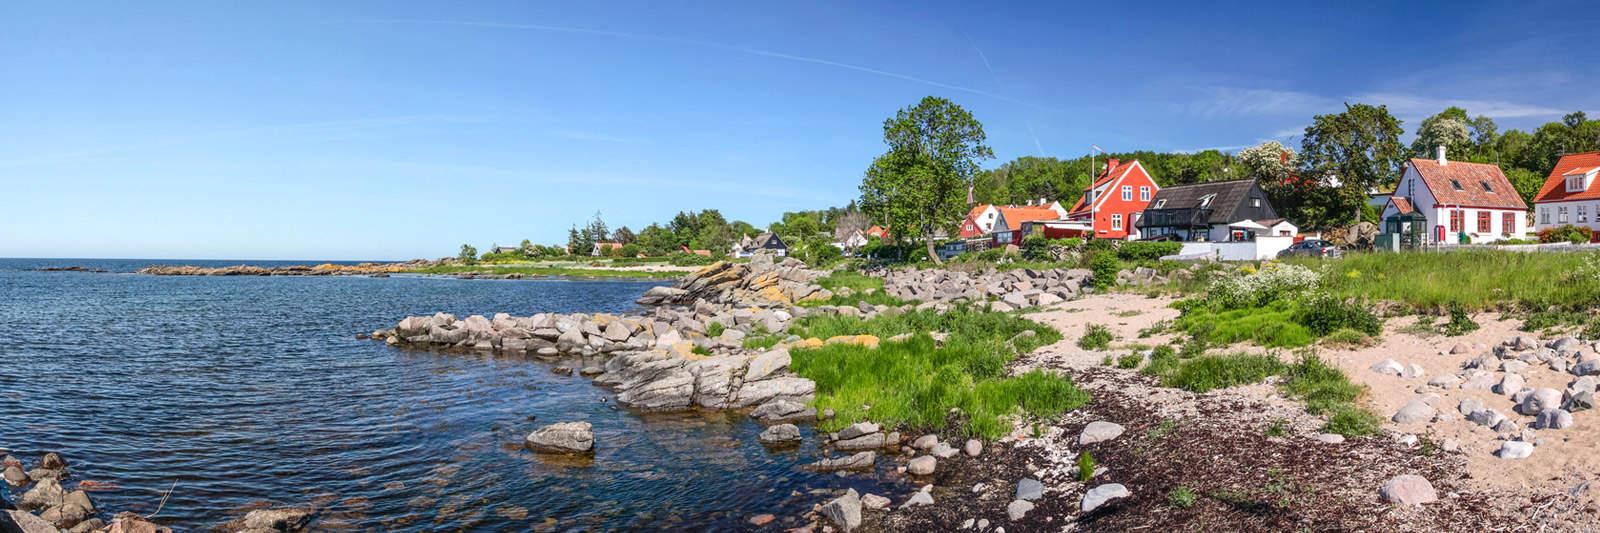 Ferienparks und Ferienanlagen in Dänemark - 35.805 Ferienwohnungen und Ferienhäuser - tourist-online.de